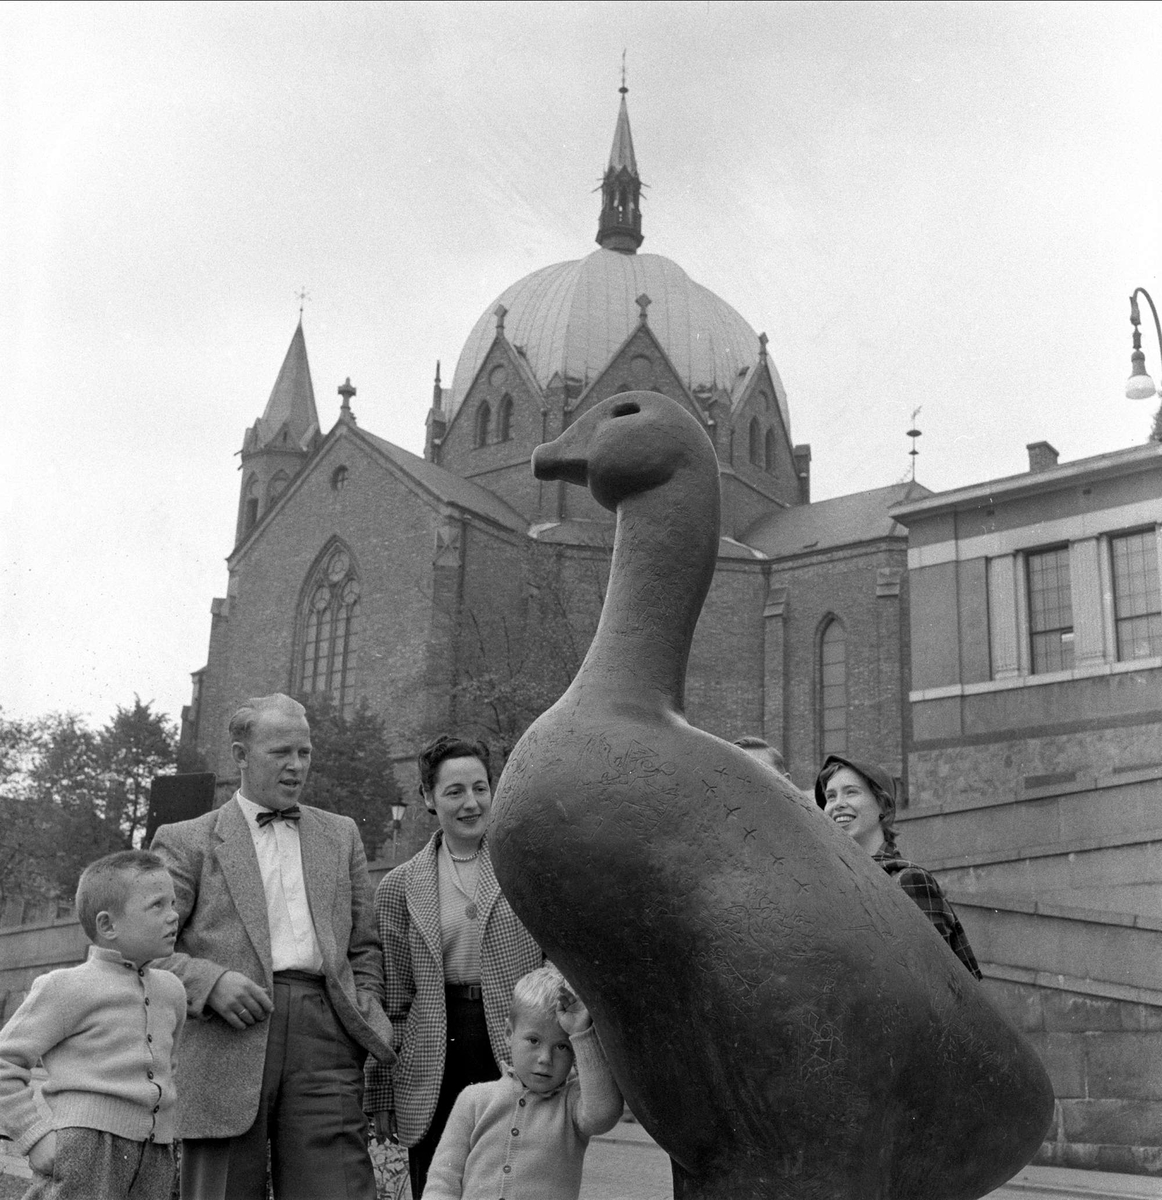 Aktiviteter i forbindelse med rebusløp for biler Dagbladet, Oslo, 24.09.1956